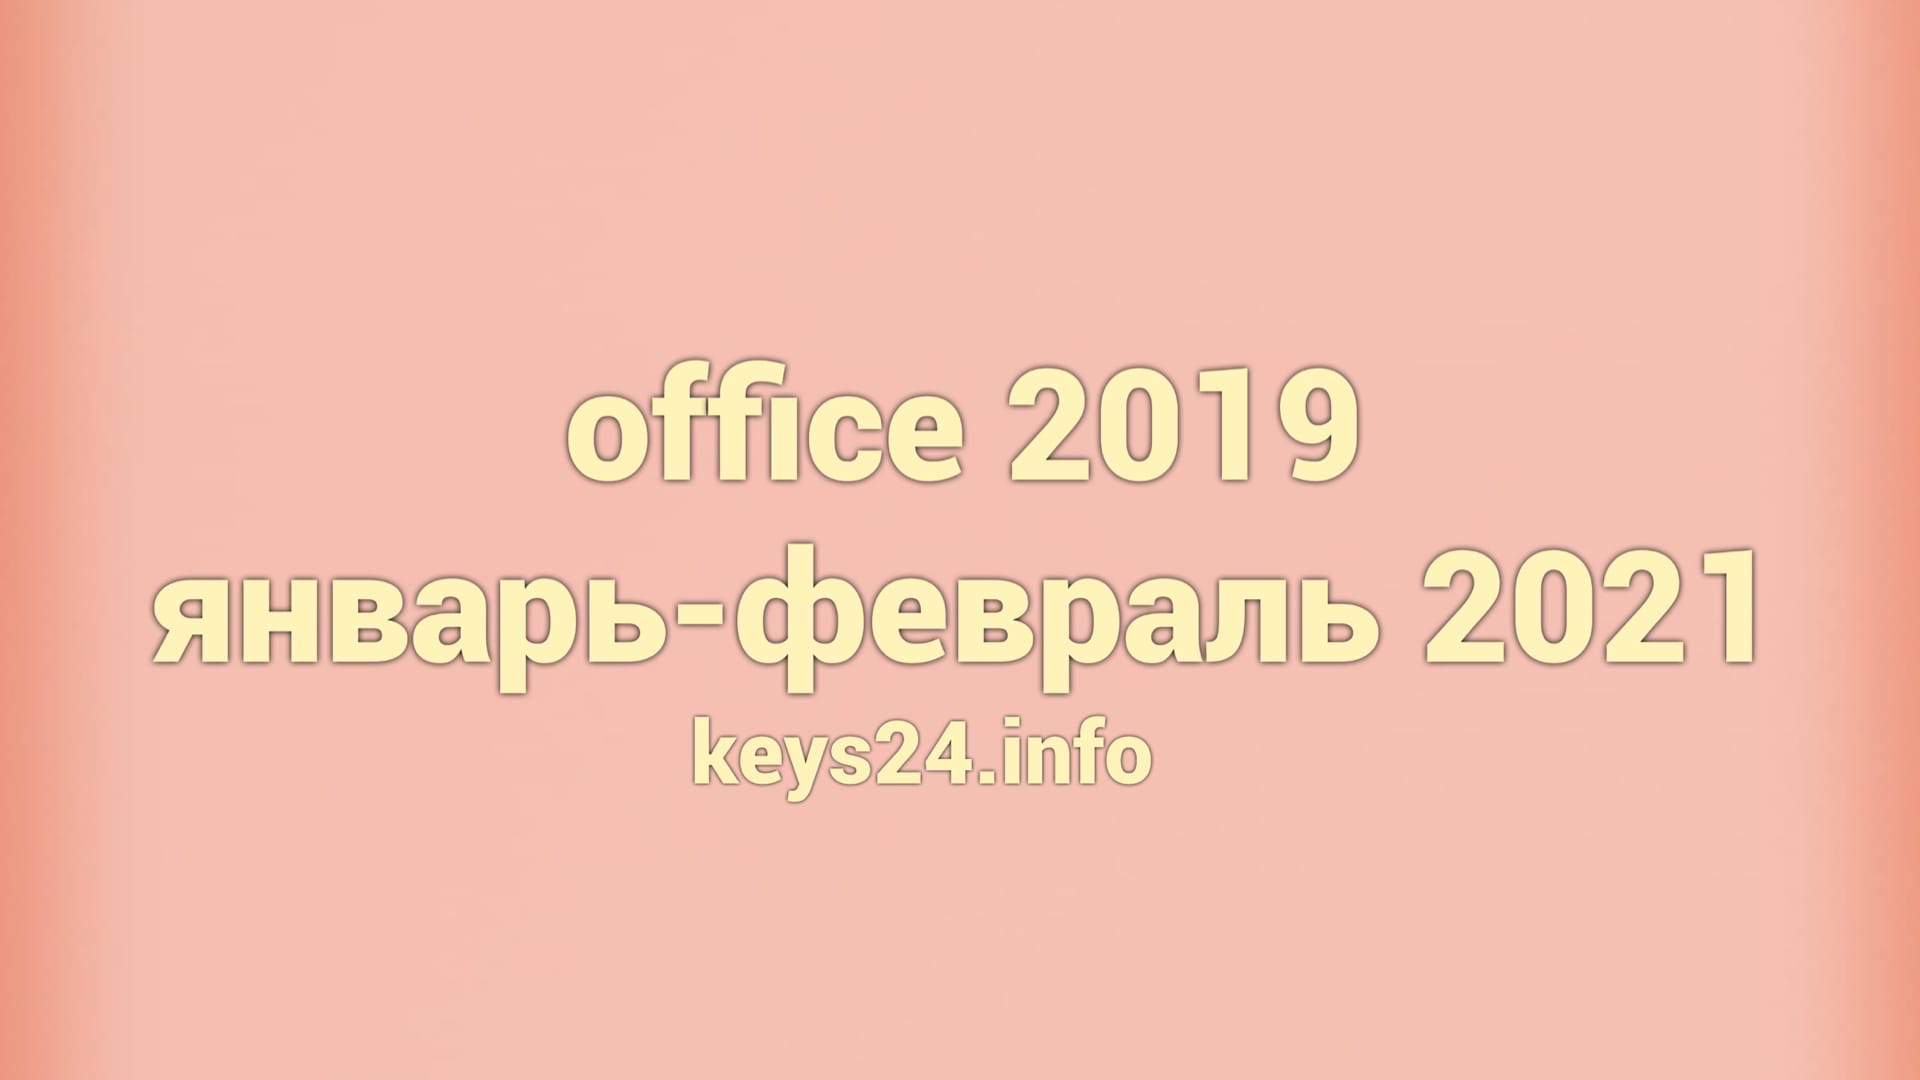 office 2019 yanvar-fevral 2021